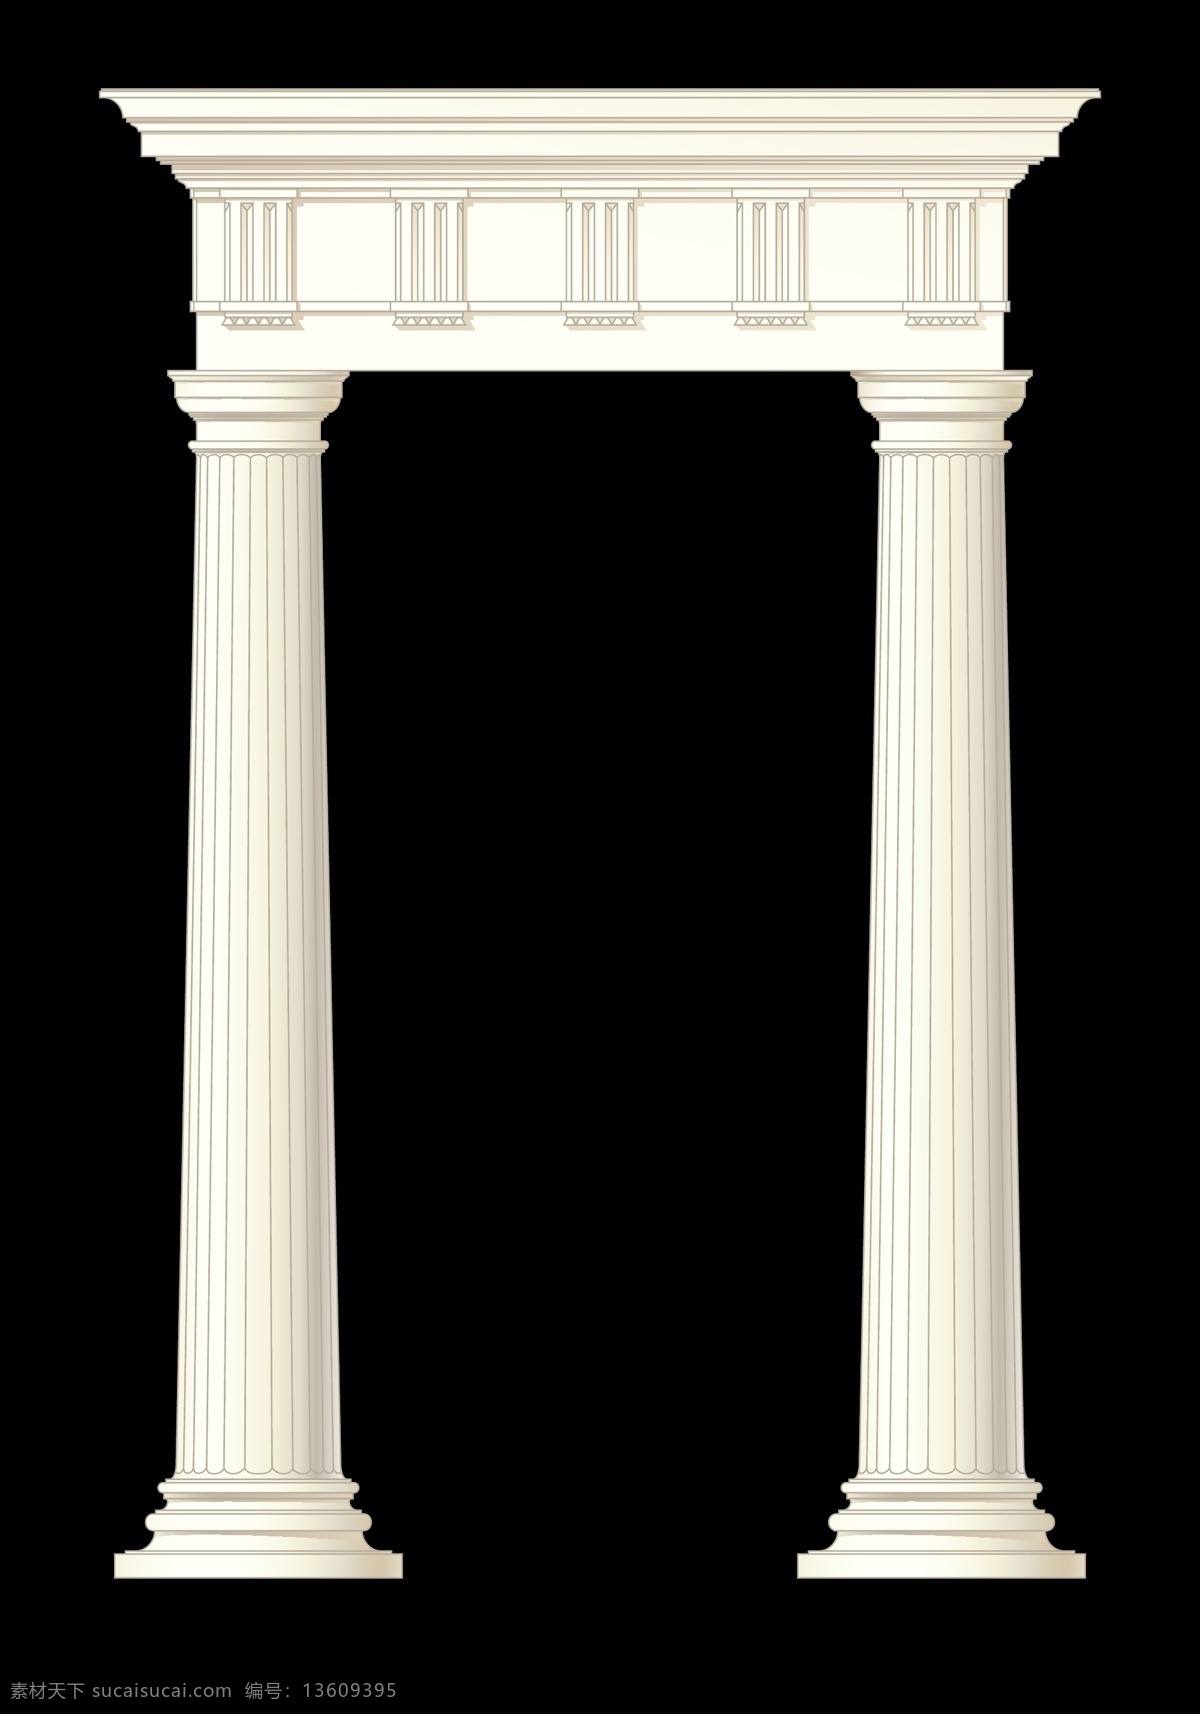 罗马柱 欧洲 石柱 雕刻 石刻 建筑花纹 手绘 建筑材料 矢量 环境设计 建筑设计